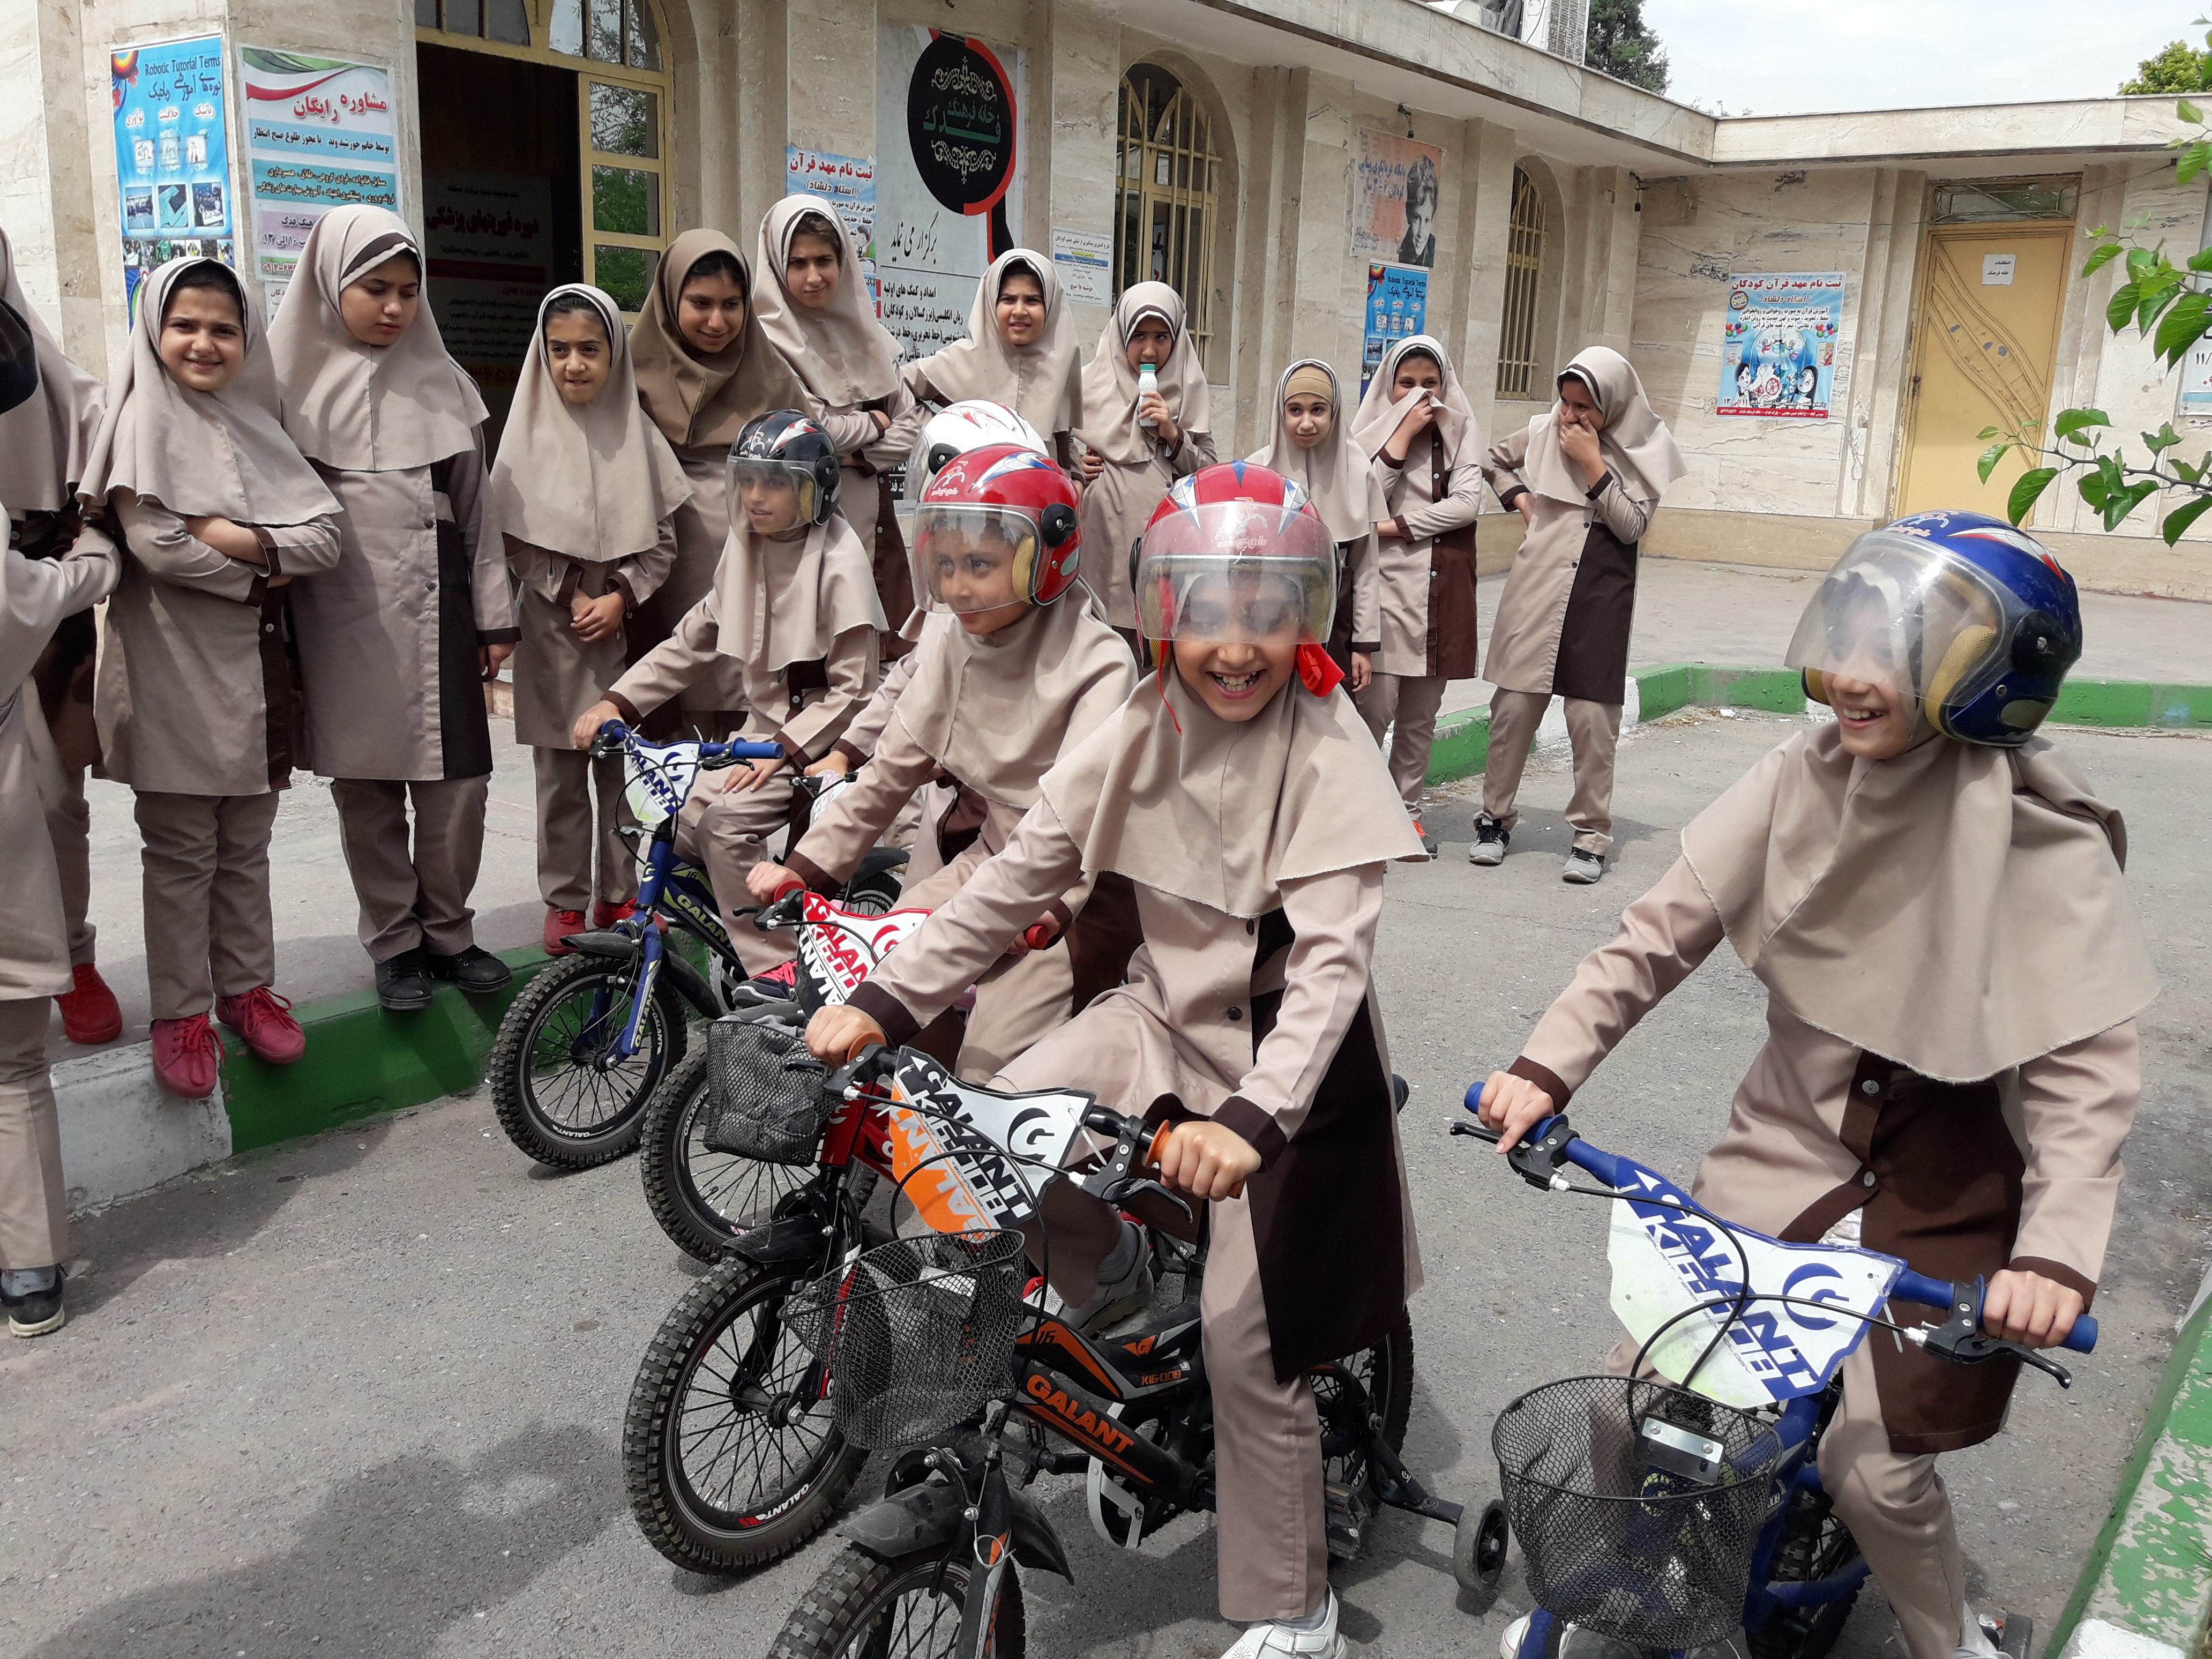 آموزش فرهنگ ترافیک به دانش آموزان دبستان دخترانه امام سجاد (ع)